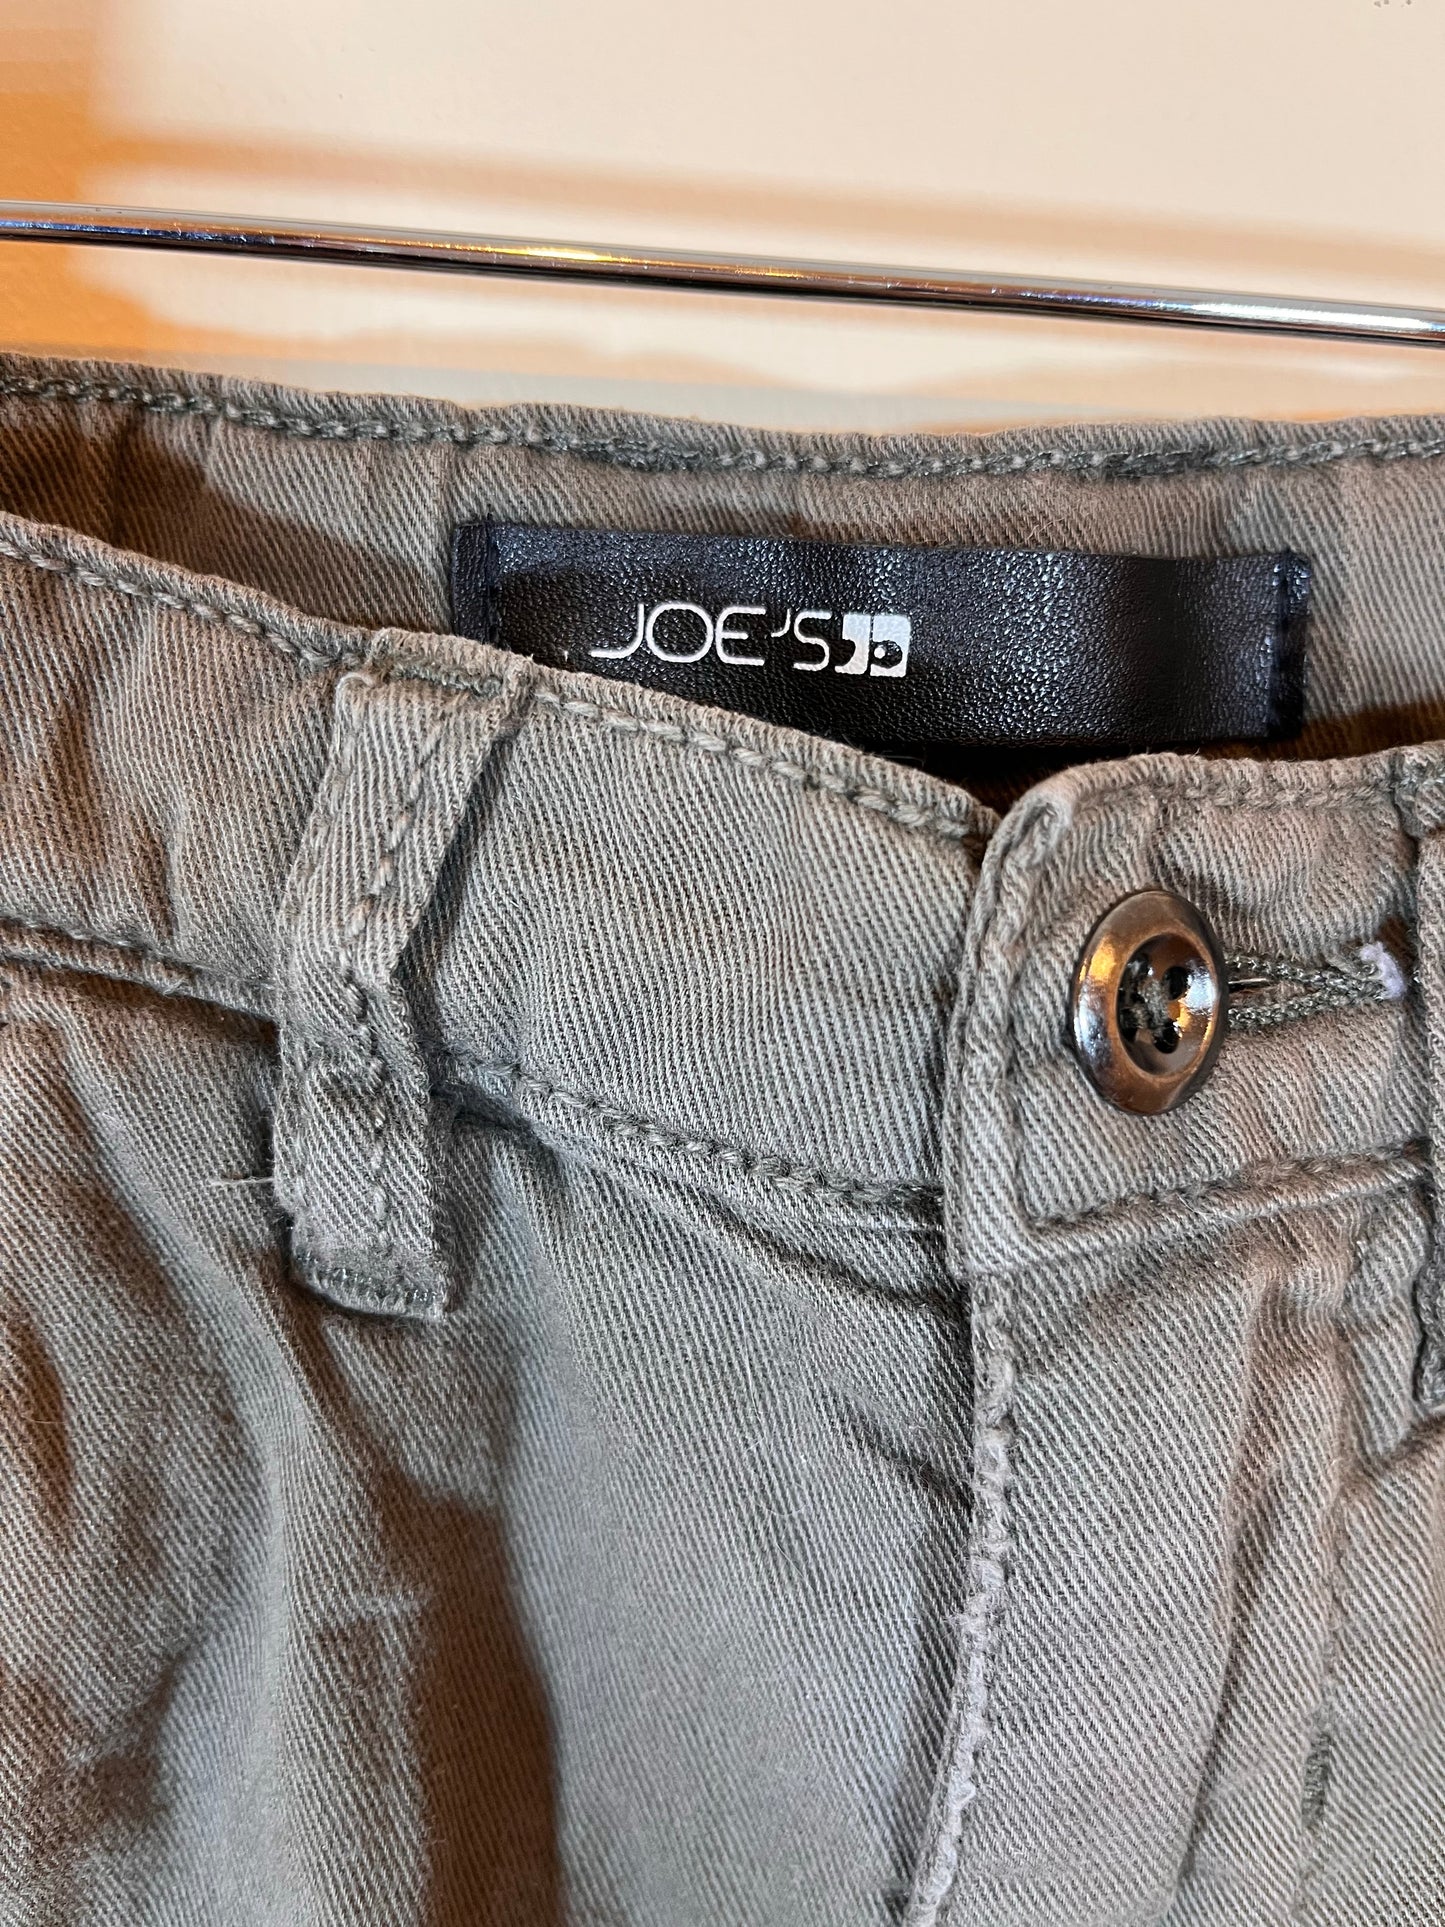 Joe’s Jeans Cargo Pants (2T)